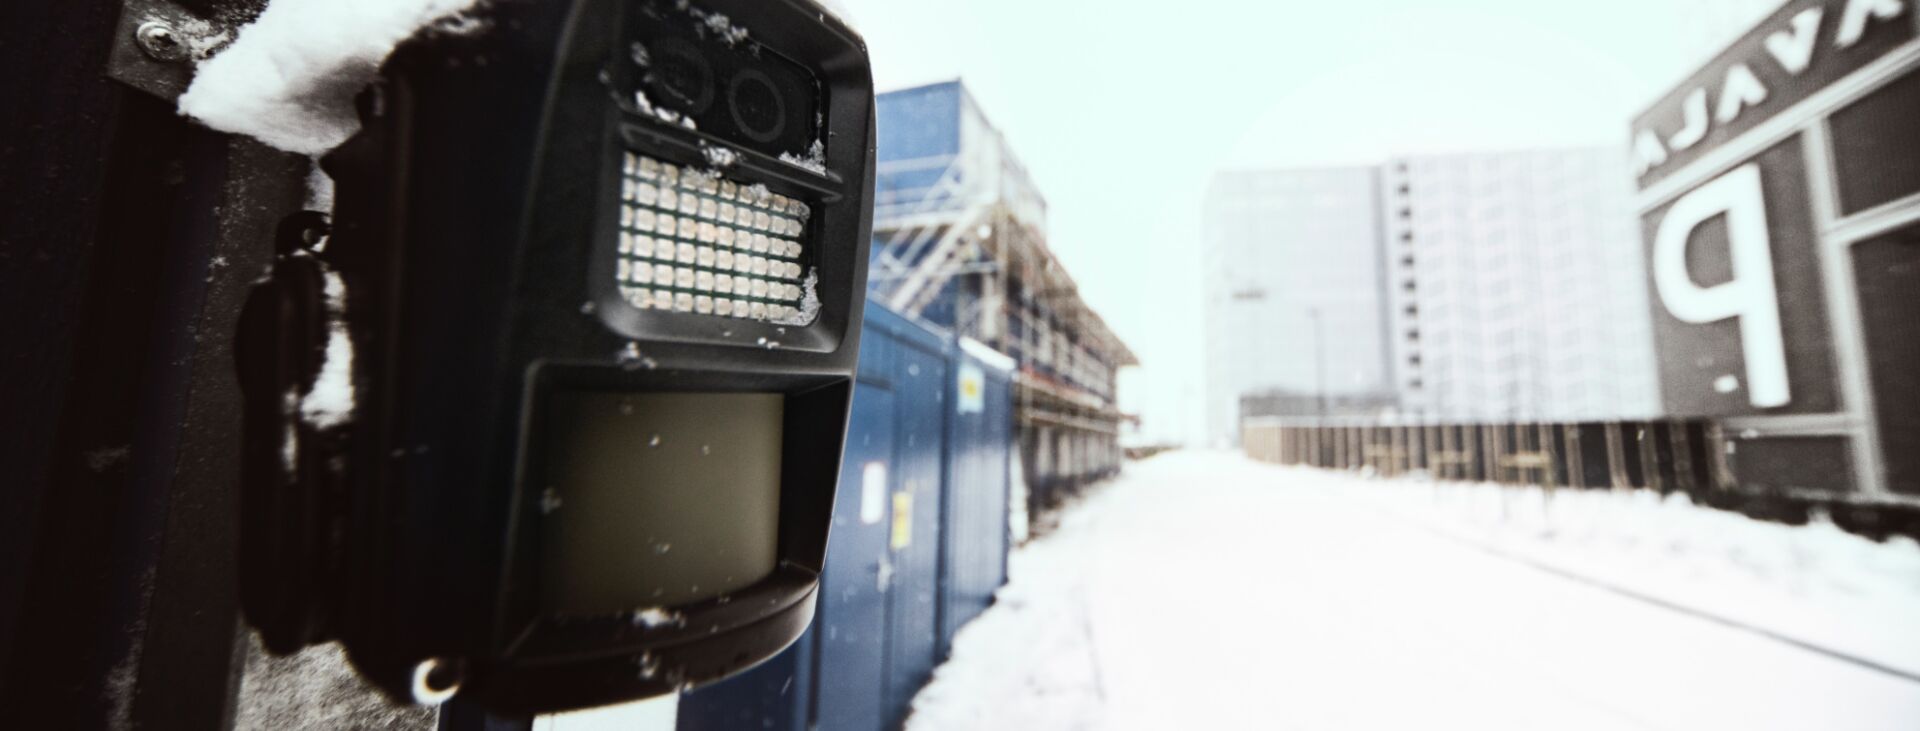 Outdoor-Überwachungskamera für kabellose Videoüberwachung